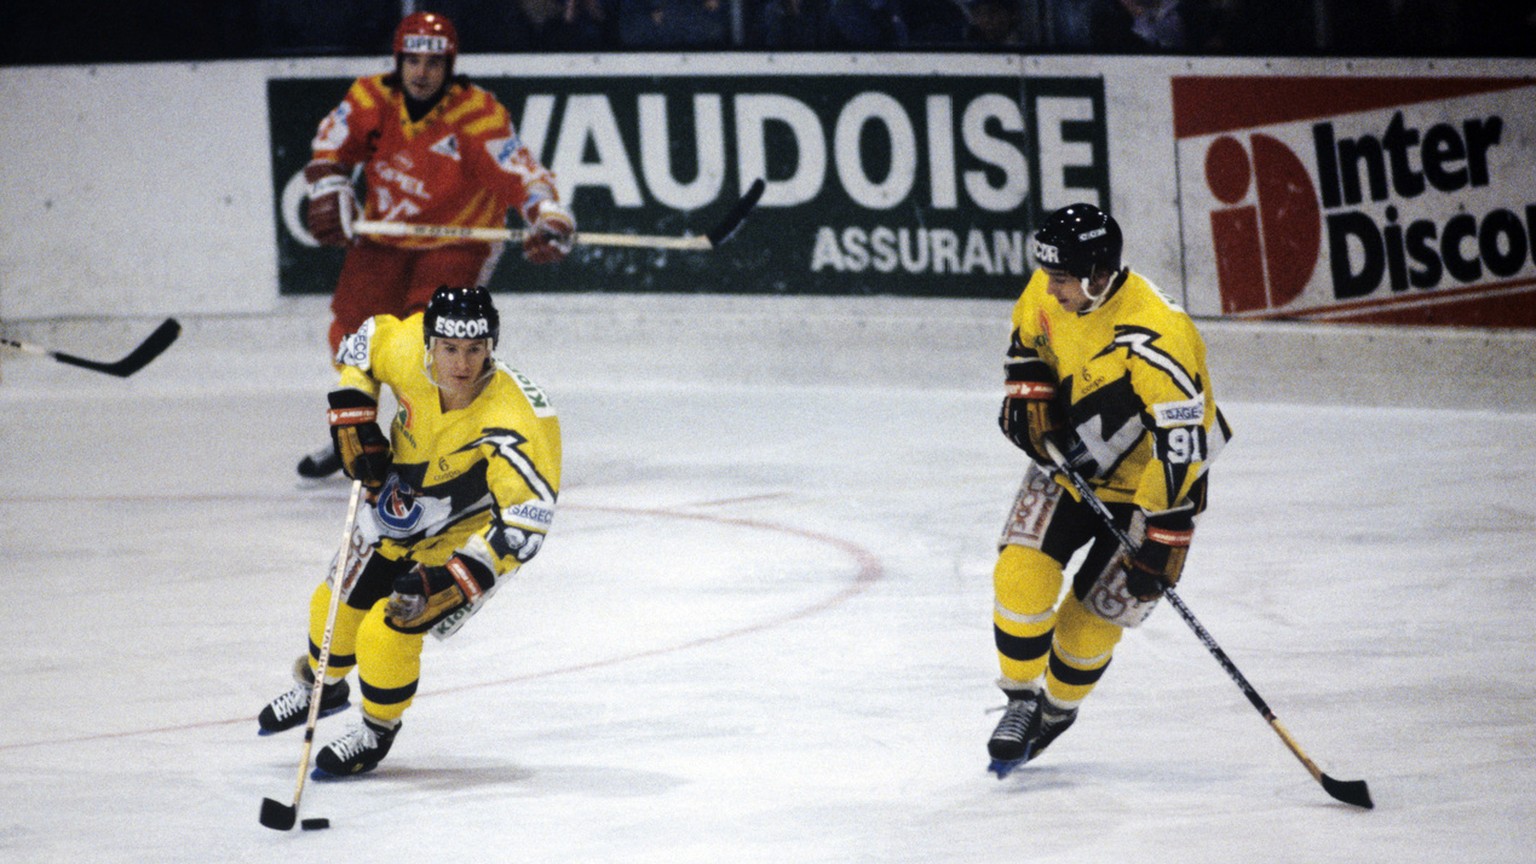 Die beiden Spieler, Slawa Bykow (links) und Andrej Chomutow (rechts), von Fribourg-Gotteron in AKtion, im November 1990. (KEYSTONE/Karl-Heinz Hug)